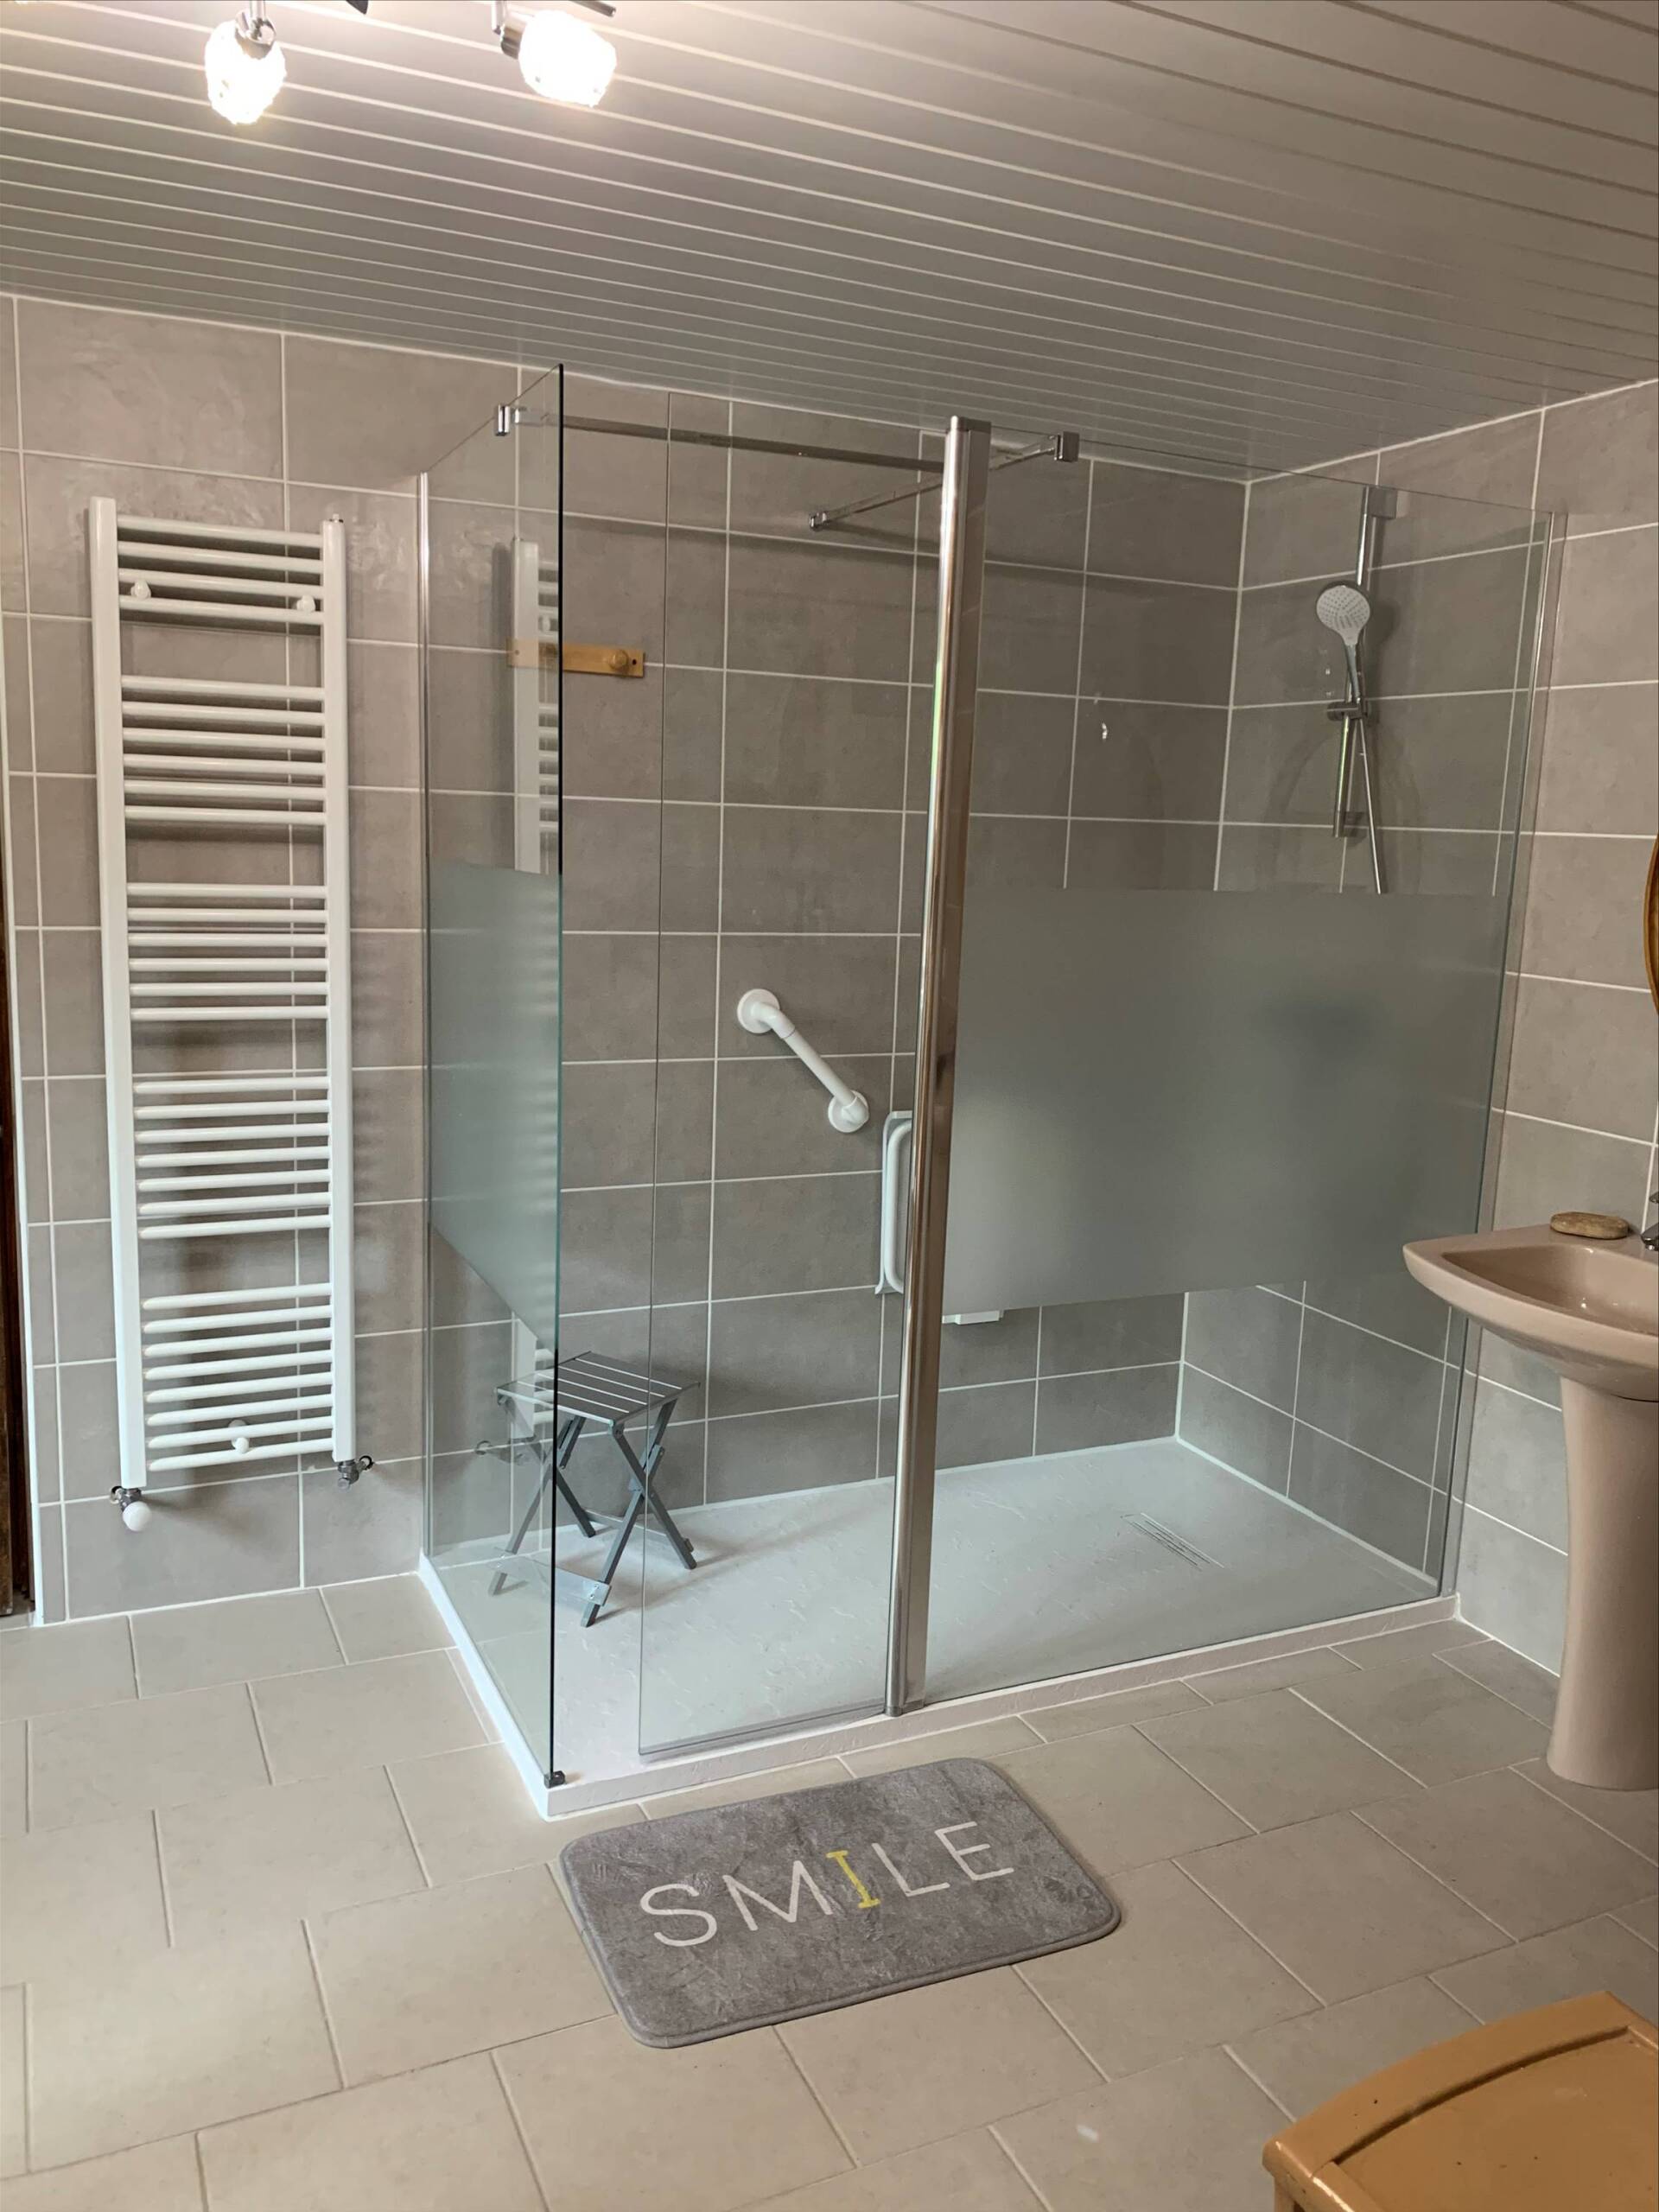 Installation sallle de bain avec douche à l'italienne